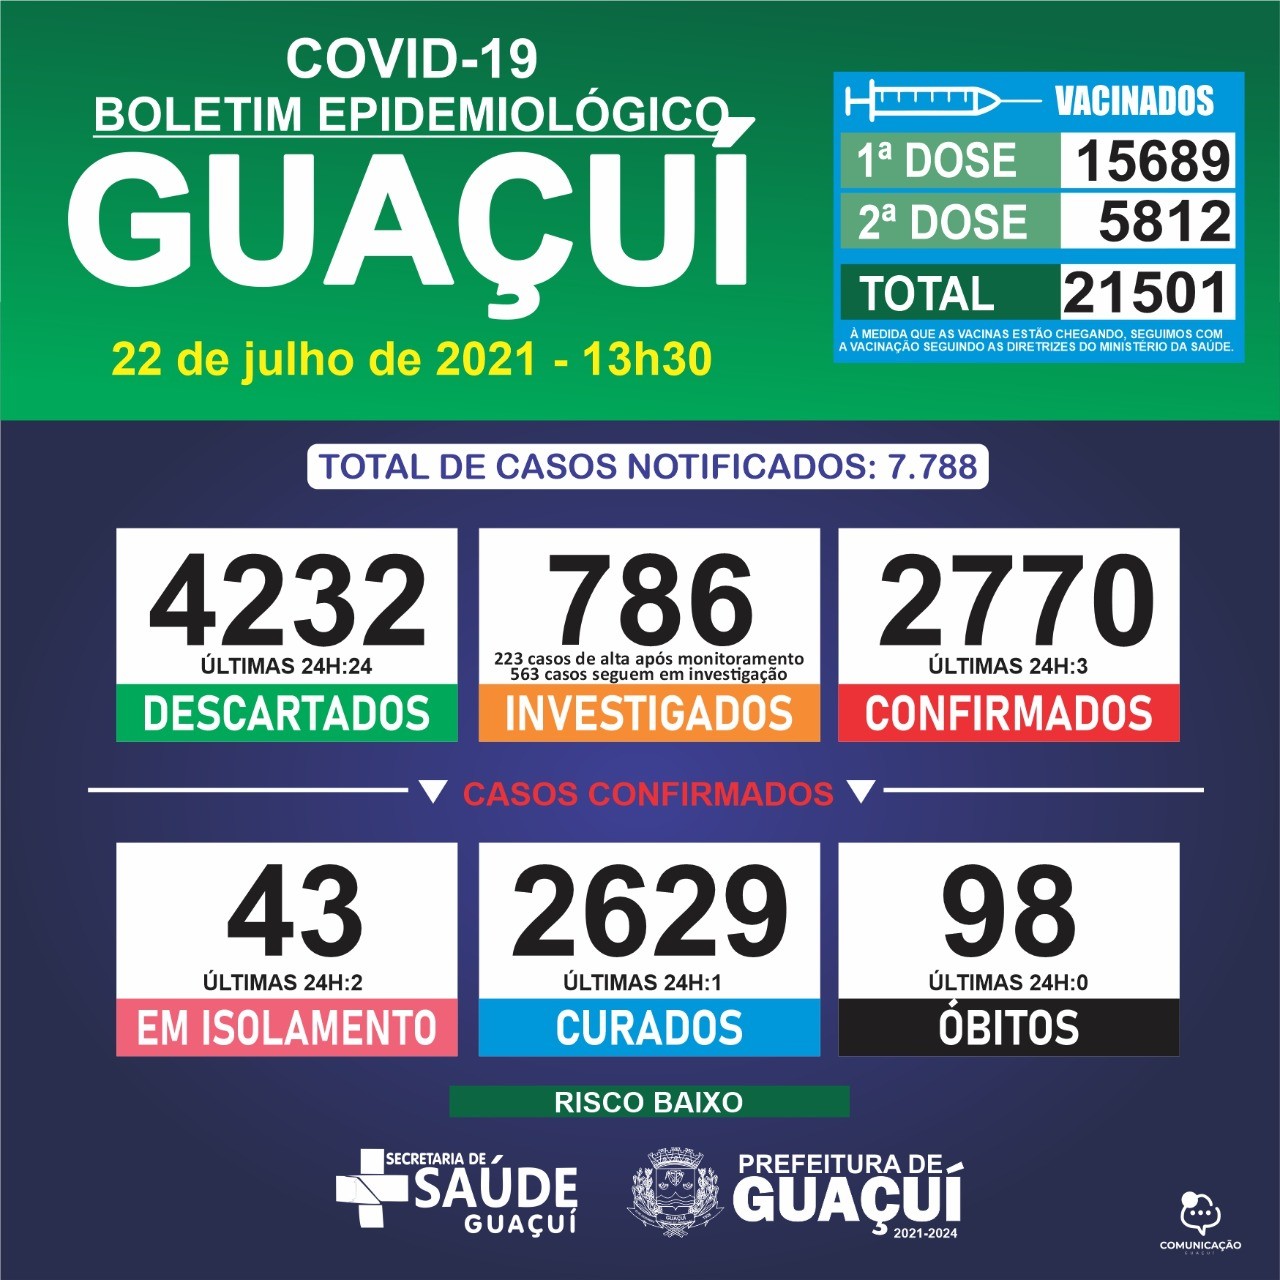 Boletim Epidemiológico 22/07/21: Guaçuí registra 3 casos confirmados e 1 curado nas últimas 24 horas